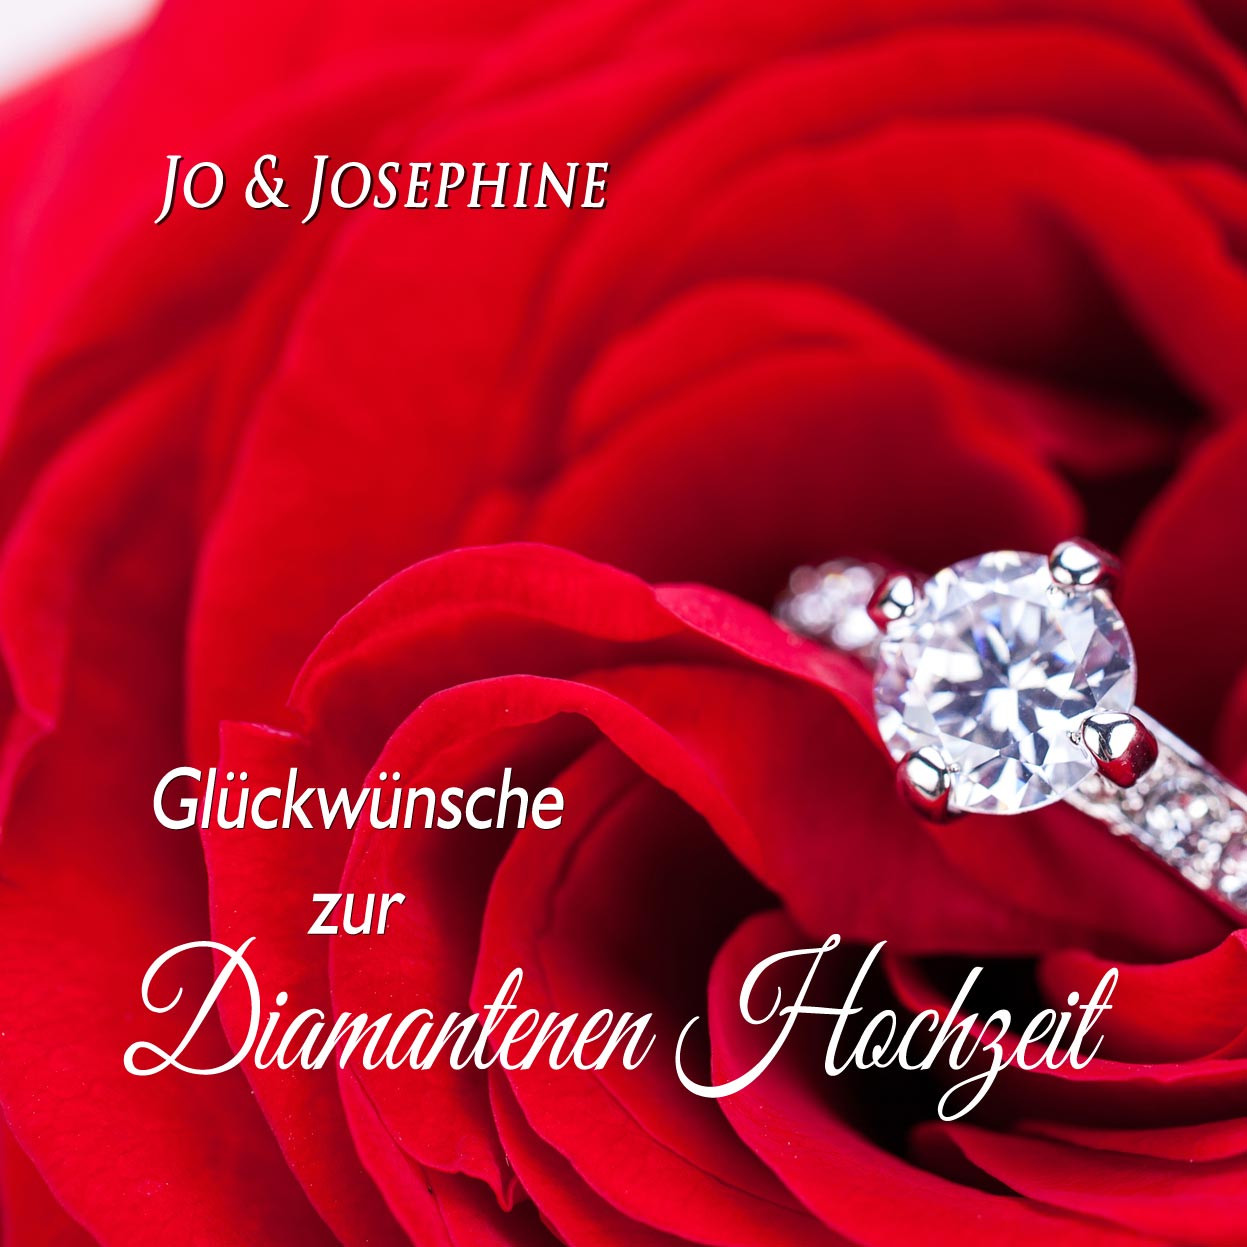 Glückwünsche Diamantene Hochzeit
 "Glückwünsche zur Diamantenen Hochzeit" Lied als MP3